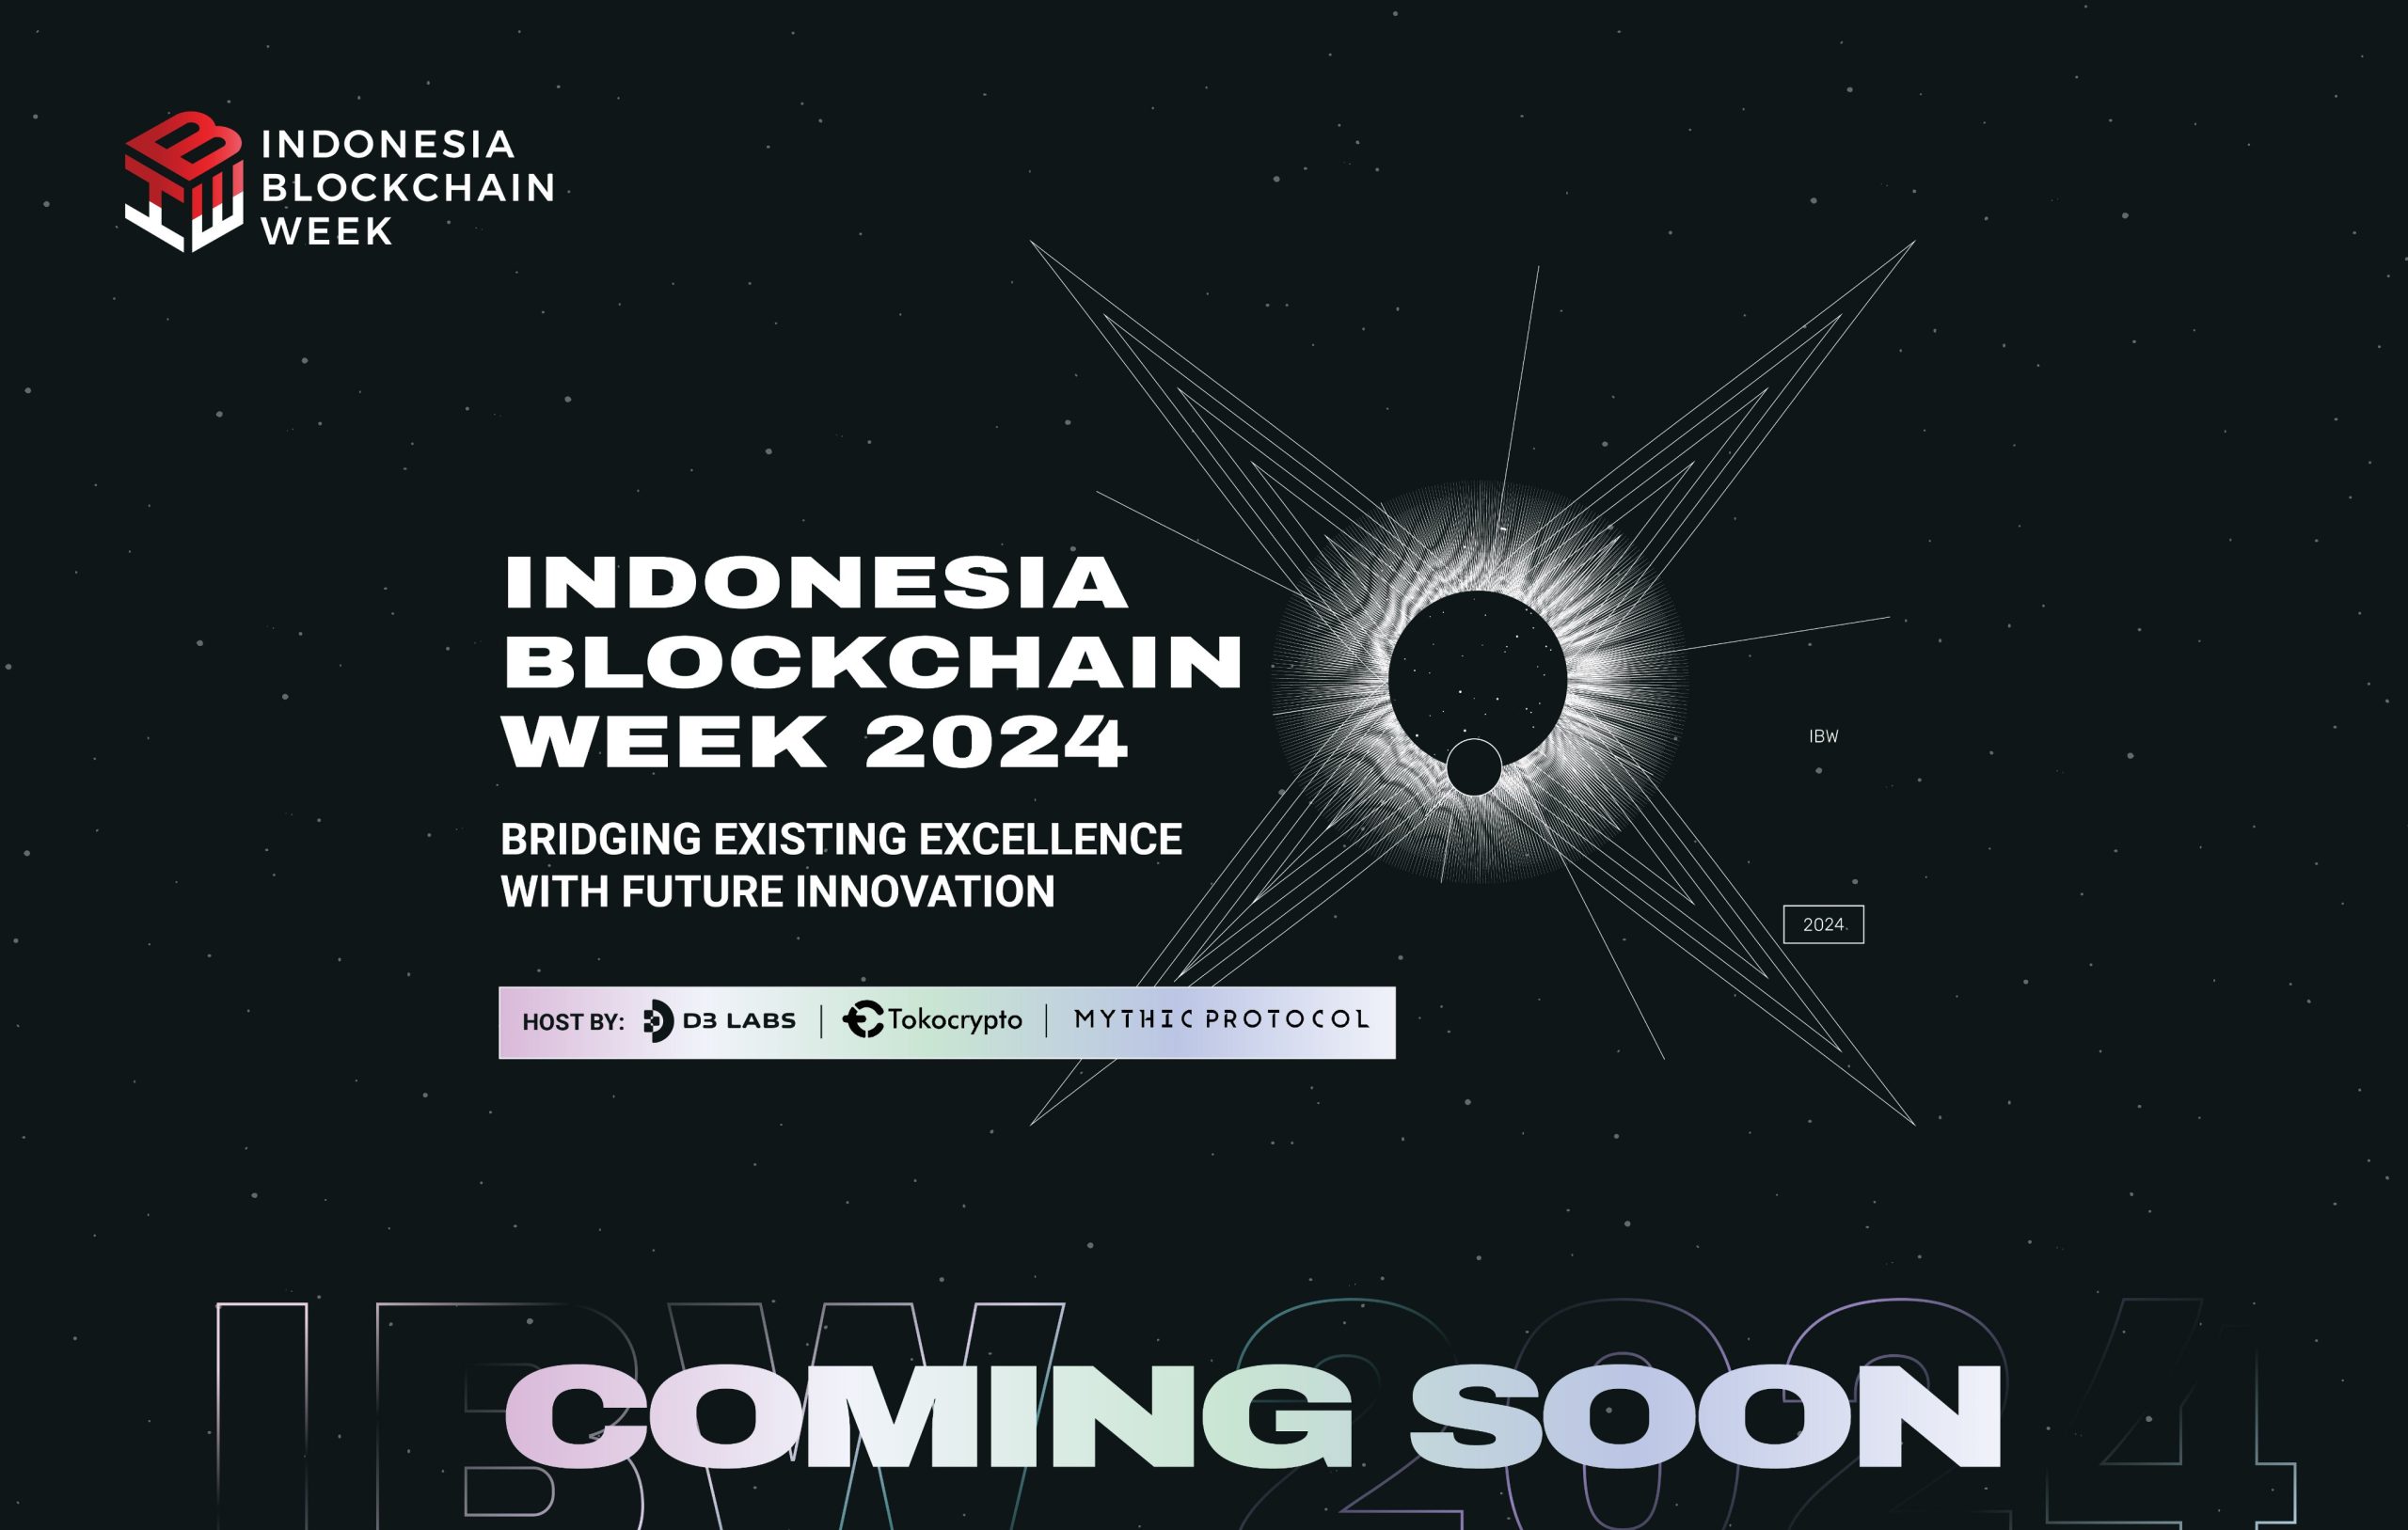 INDONESIA BLOCKCHAIN WEEK 2024 Kembali Digelar, Jadikan Indonesia Pusat Inovasi Blockchain di Asia Tenggara